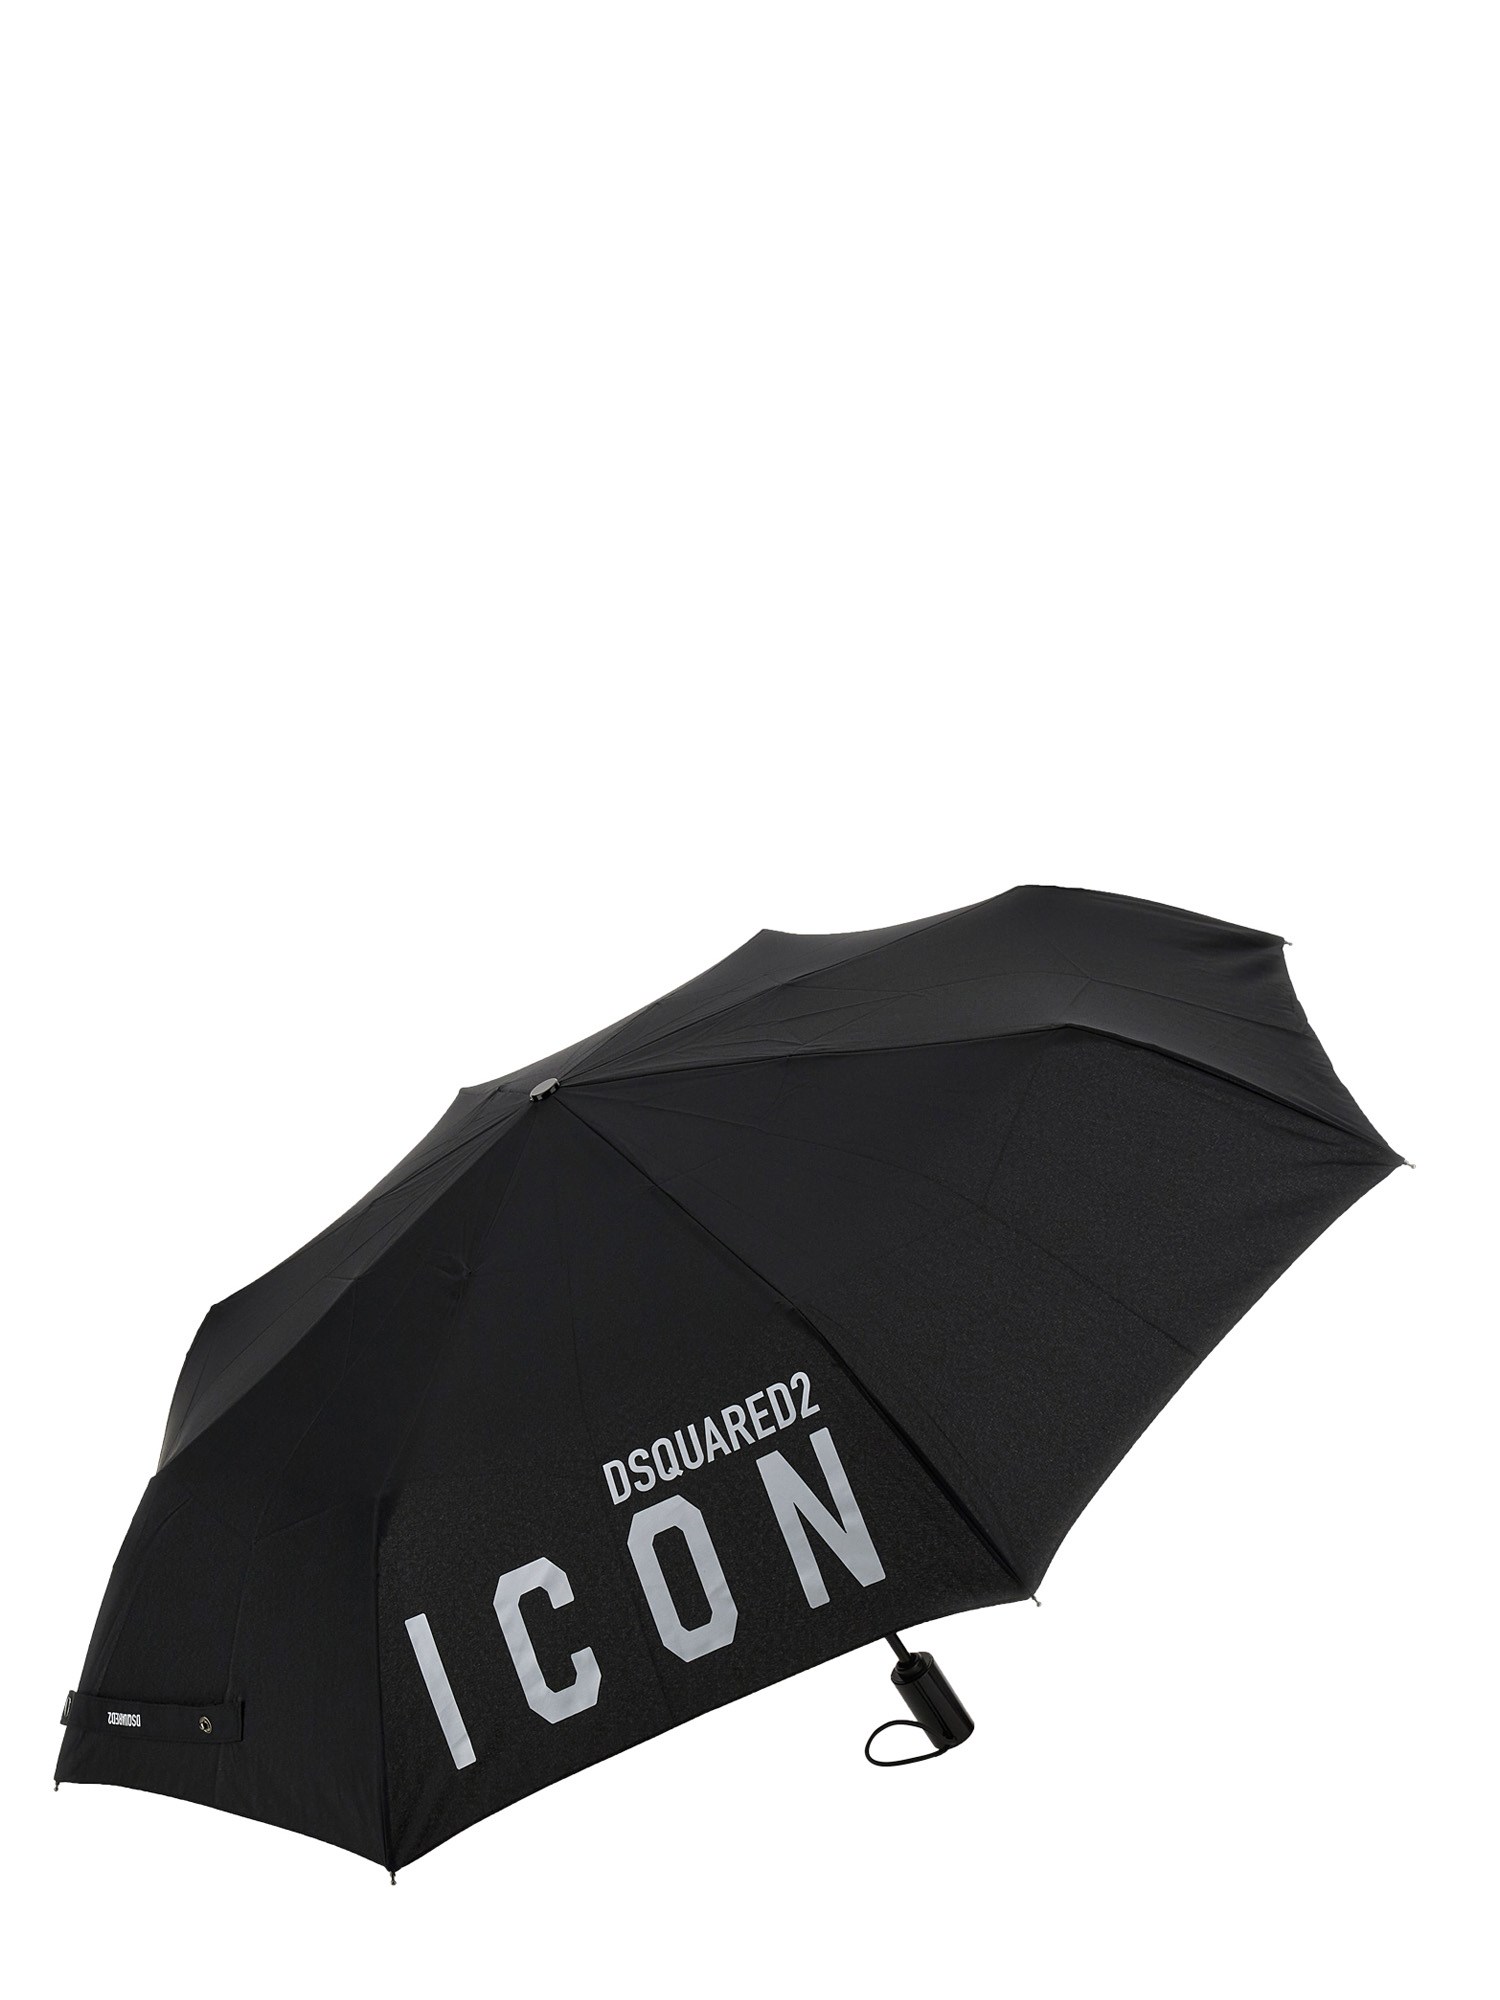 dsquared umbrella with logo